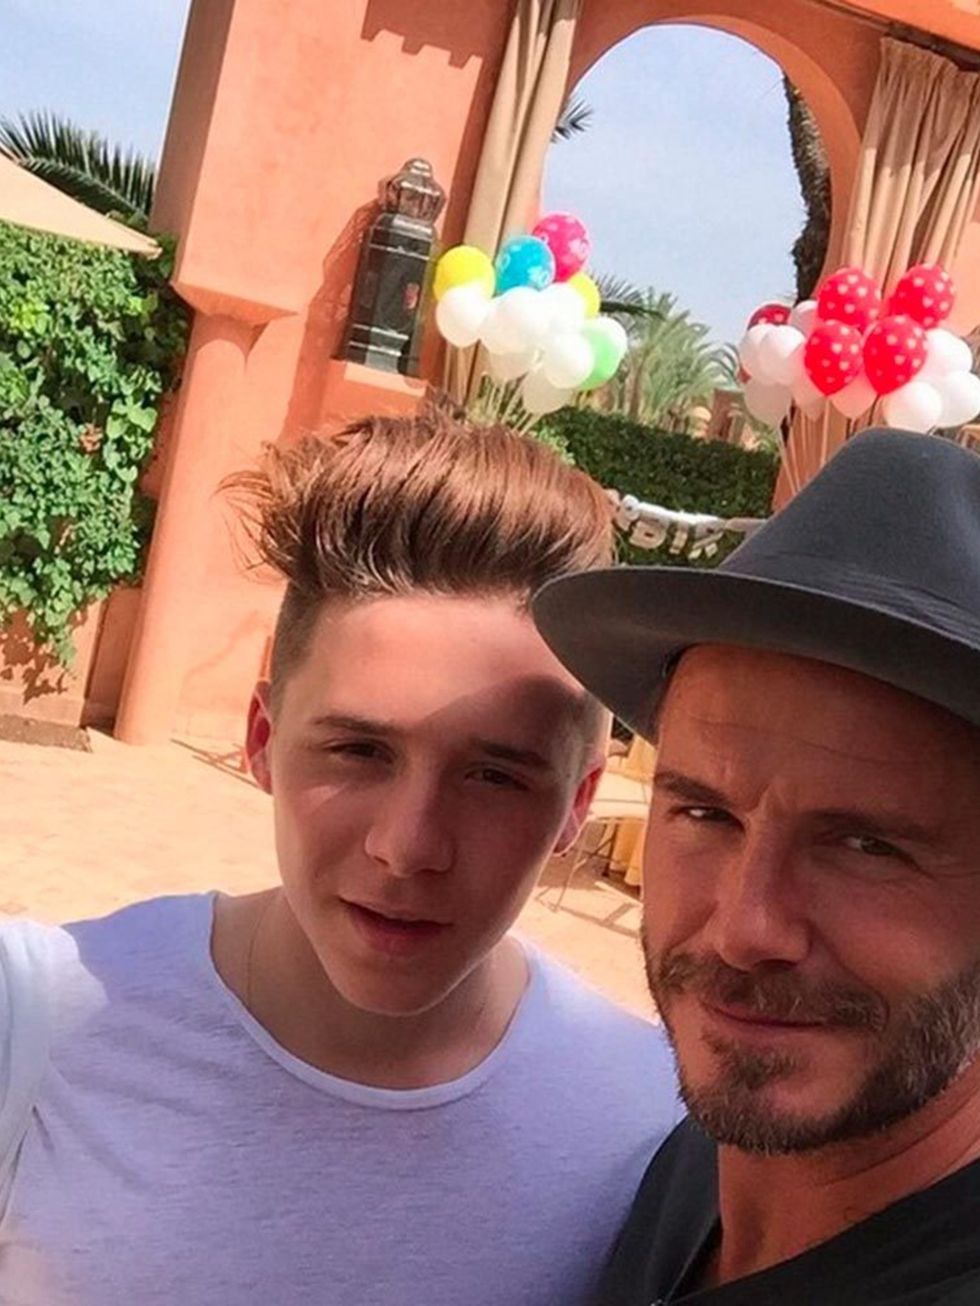 <p>David Beckham (@davidbeckham)</p>

<p>'Here's a photo with <a href="https://instagram.com/brooklynbeckham/">@brooklynbeckham</a> the real boss of the family! <a href="https://instagram.com/explore/tags/db40/">#DB40</a>'</p>